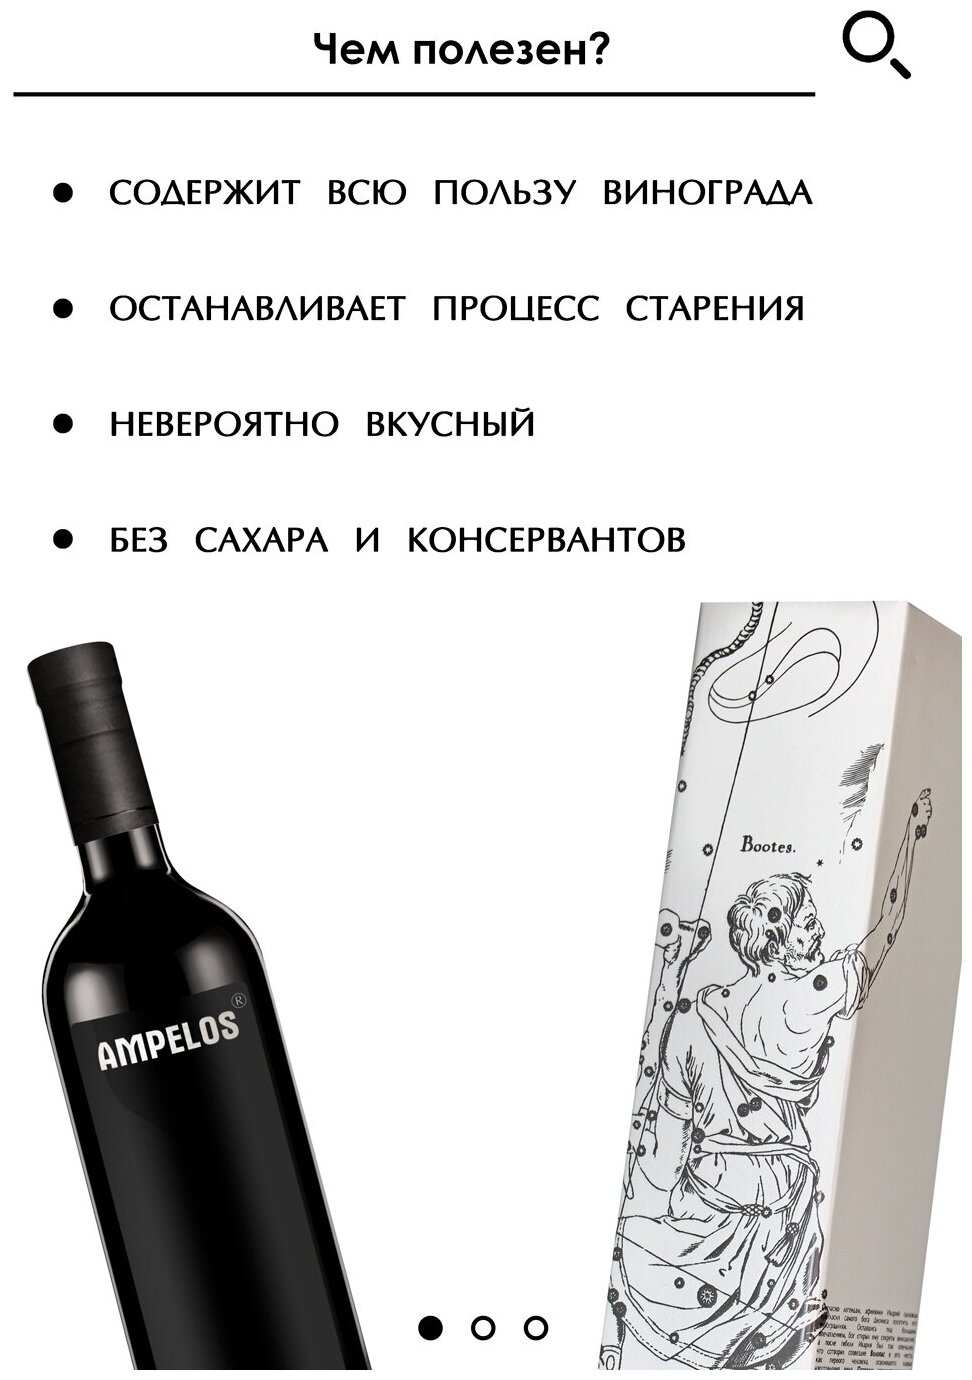 Виноградный сок высшего сорта "AMPELOS", "VOLOPAS", Бизорюк 750 мл, замедляет процессы старения, натуральный концентрированный сок винограда - фотография № 3